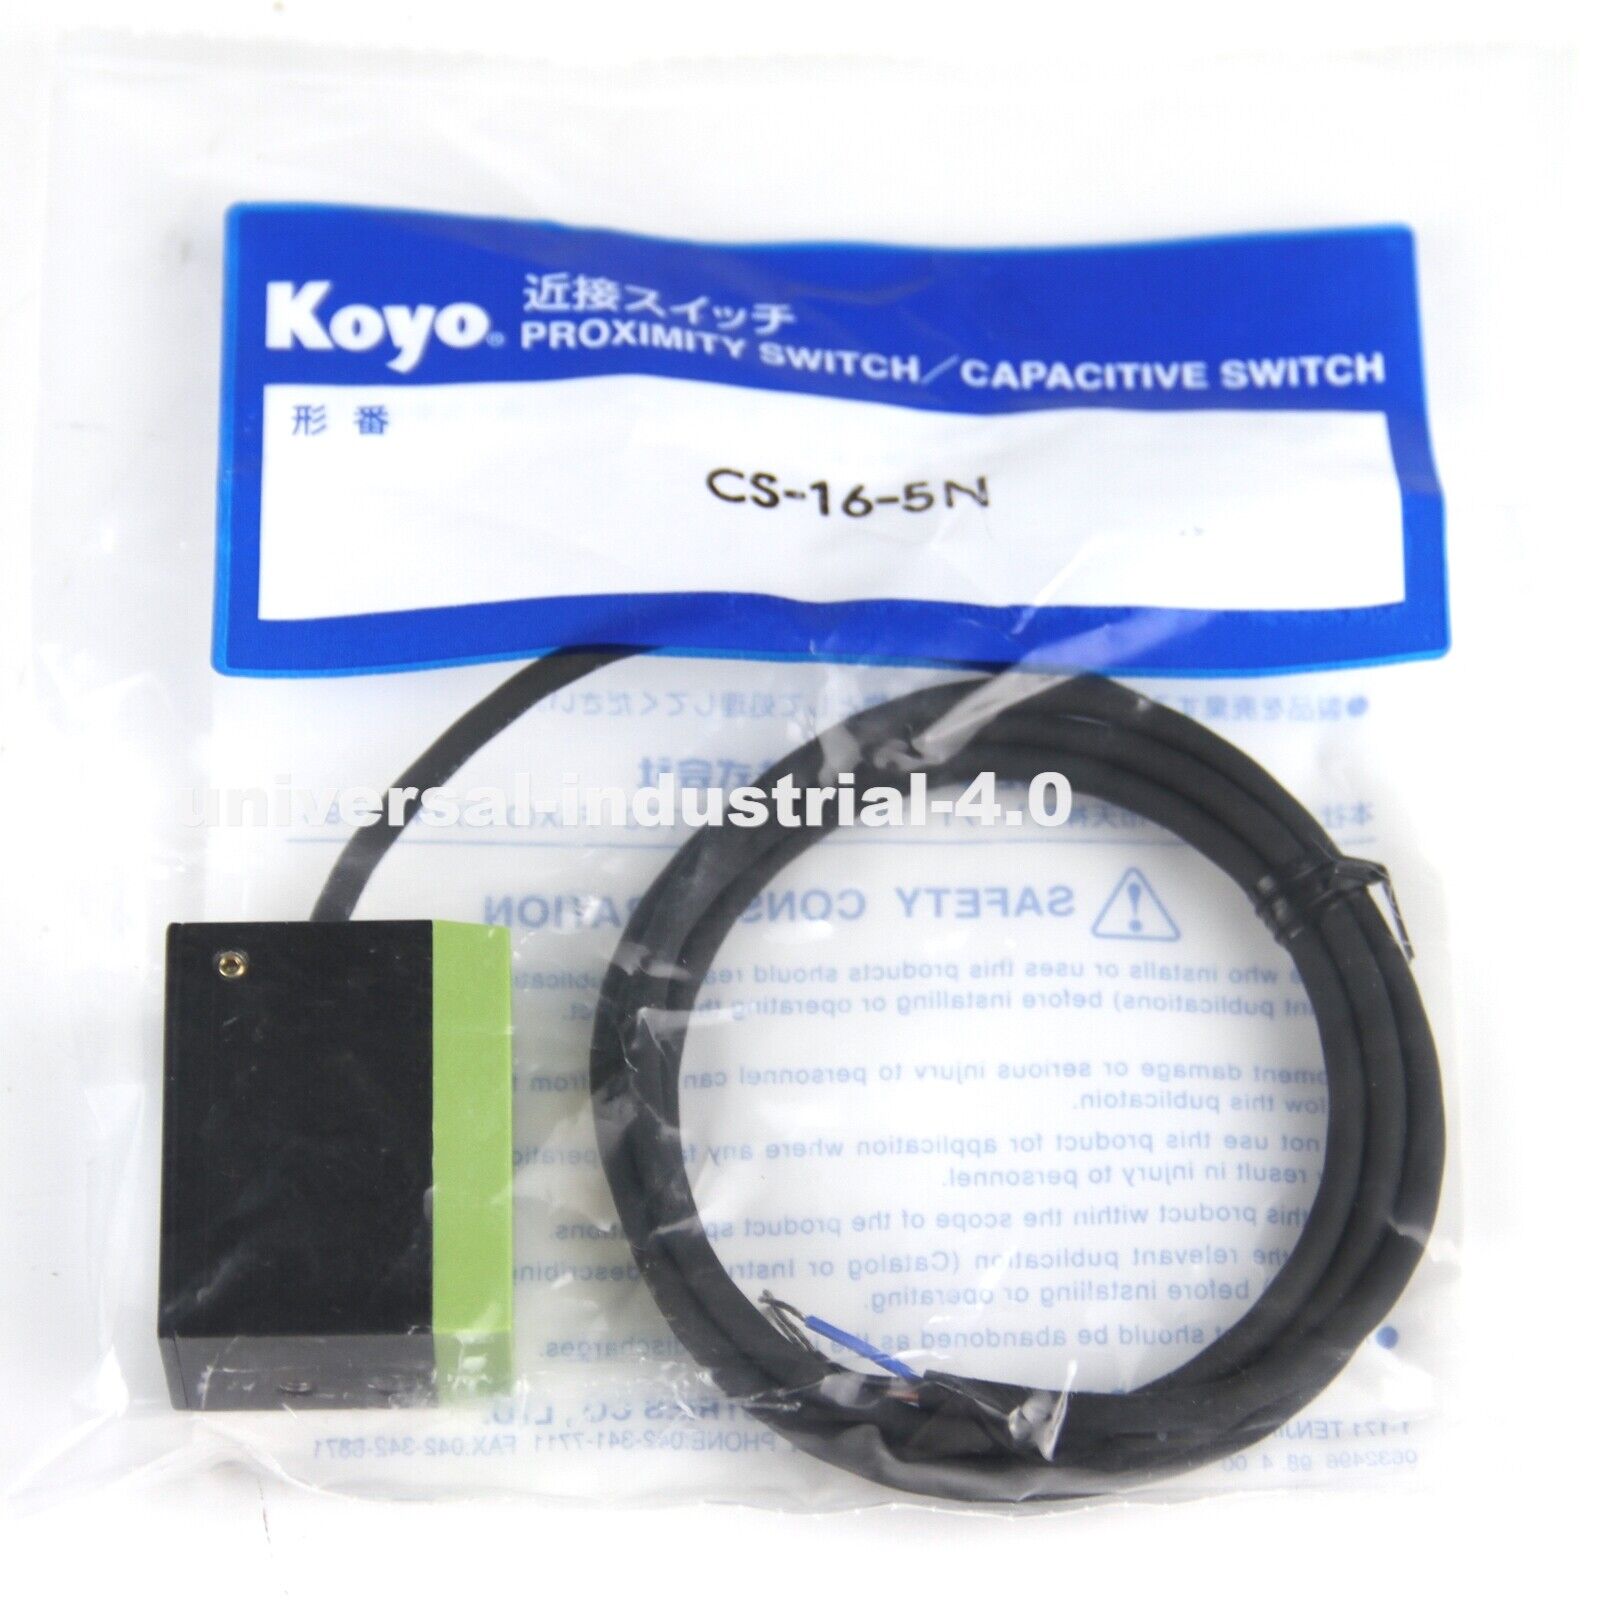 KOYO Electronic Proximity Switch CS-16-5N CS165N